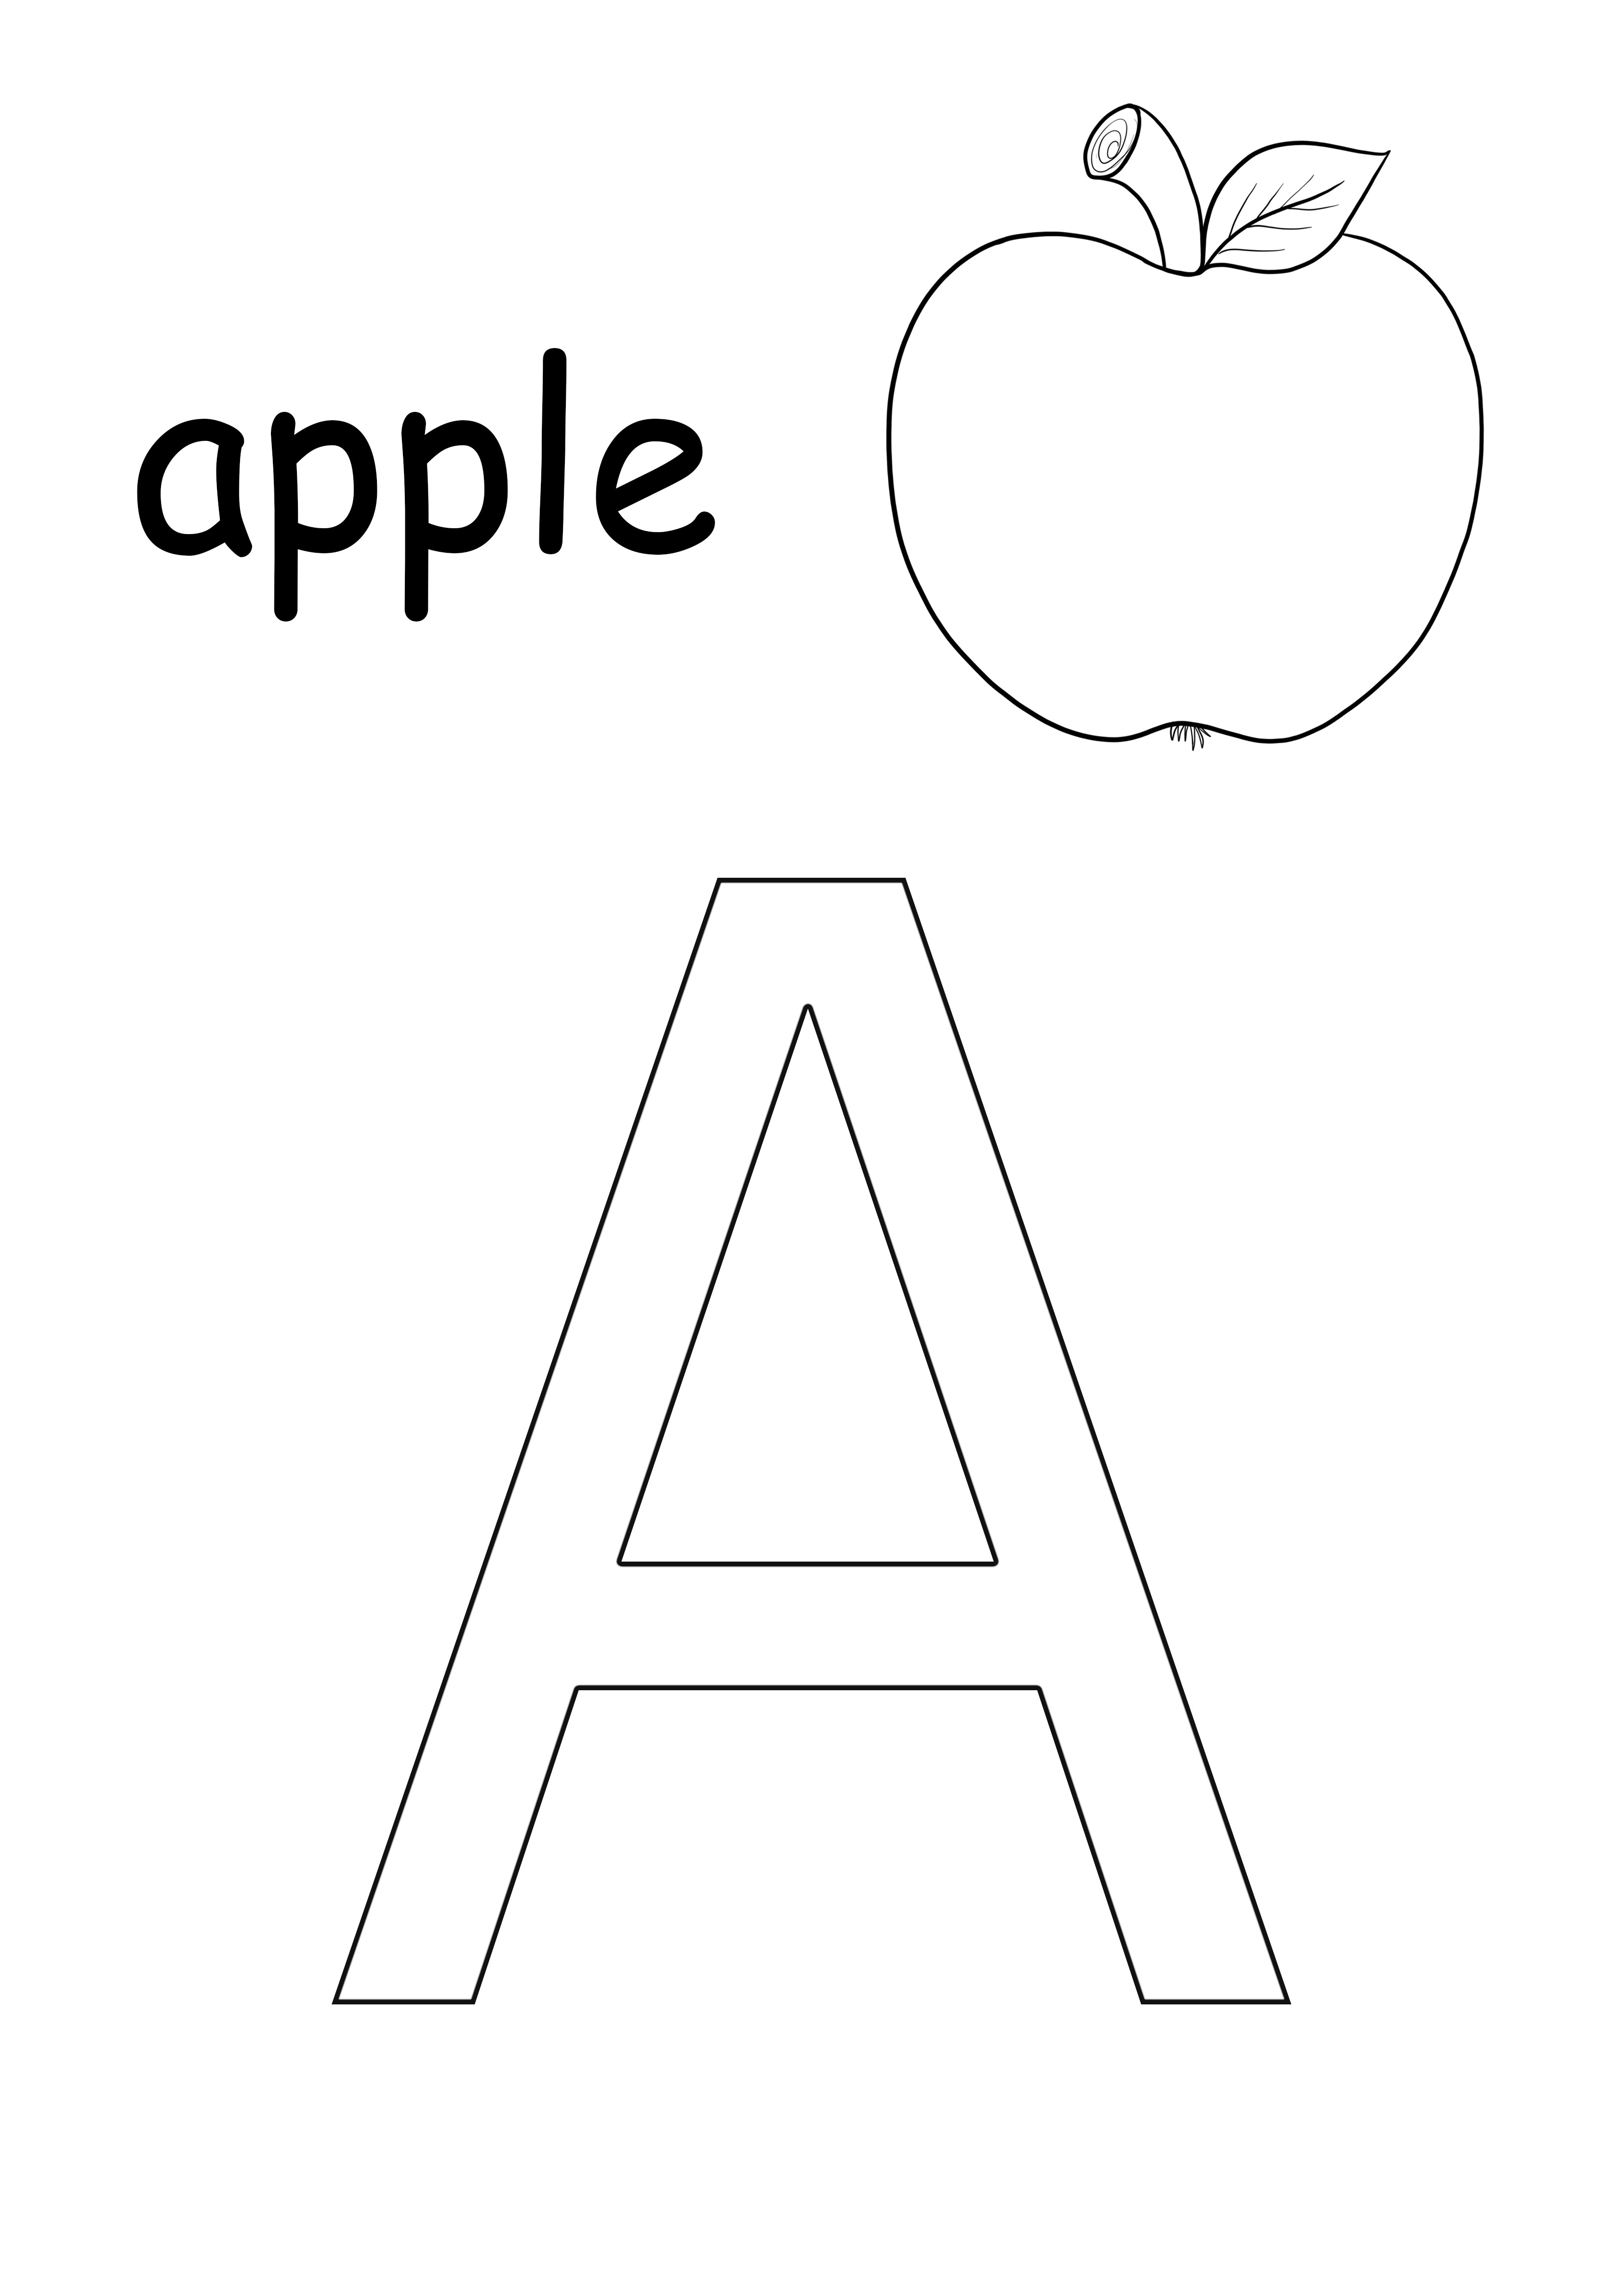 A harfi-elma meyve-küçük harfli kelime ücretsiz yazdırılabilir sayfa